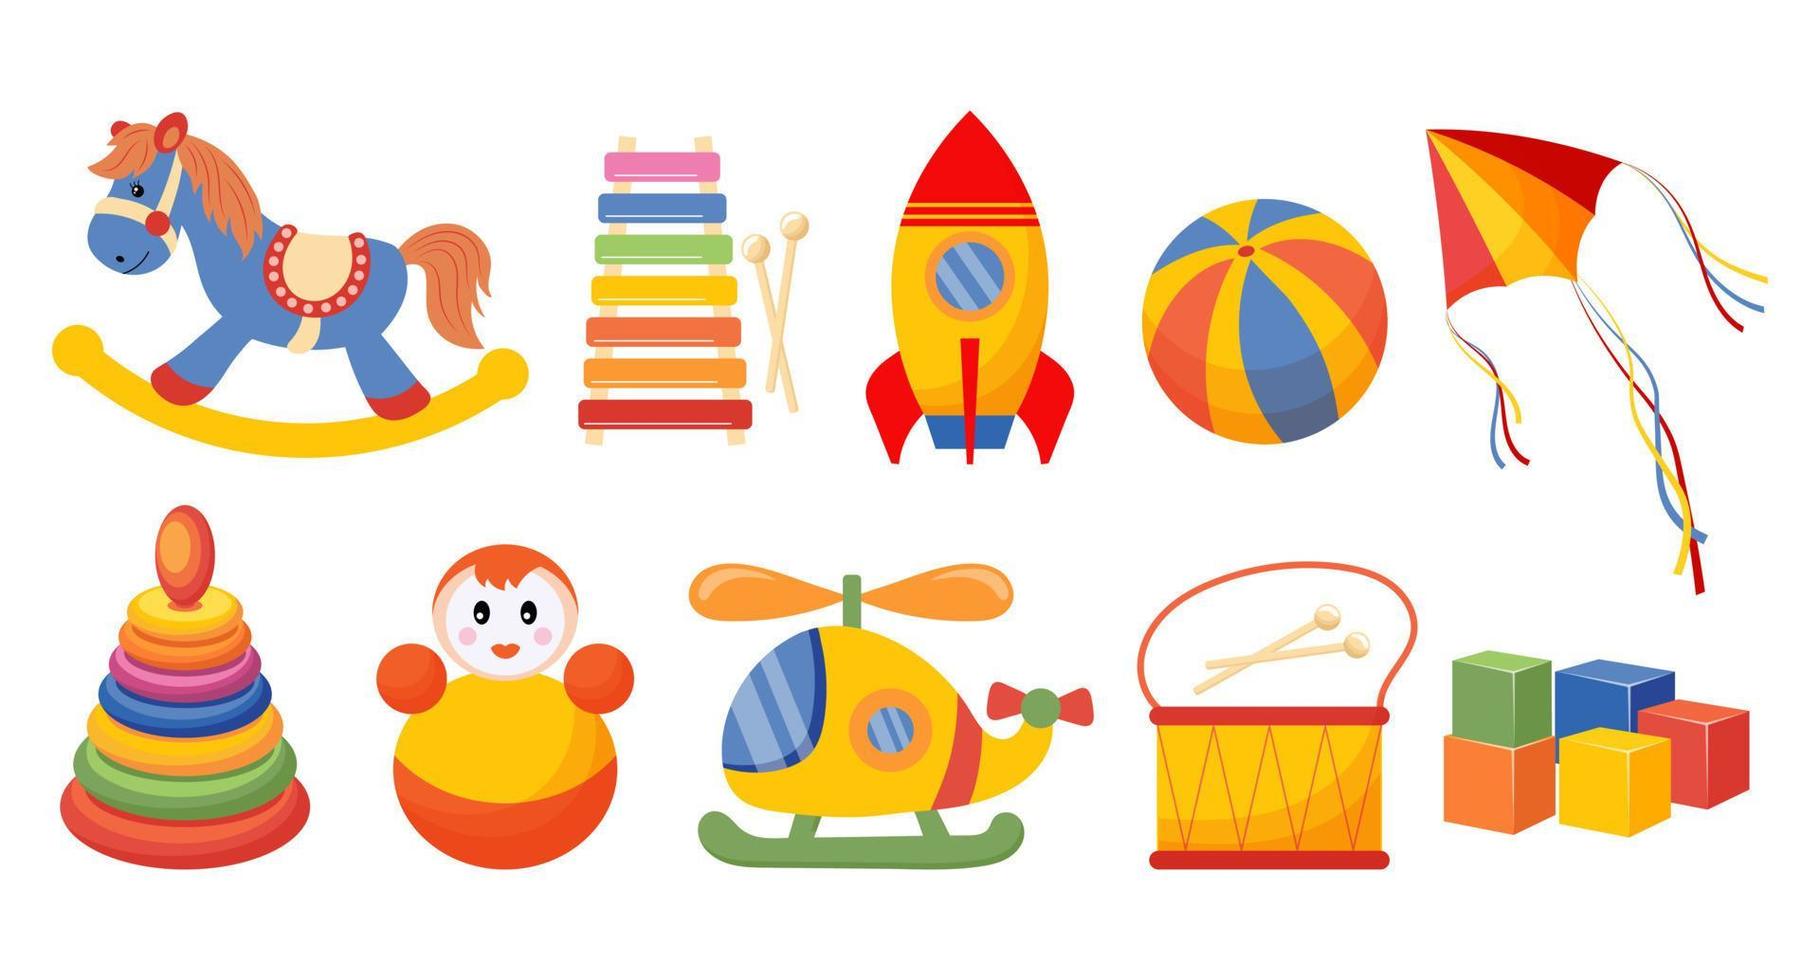 uppsättning av barns leksaker. raket, docka, pyramid, gungande häst, helikopter och trummor på en vit bakgrund. bebis leksaker ikoner, vektor